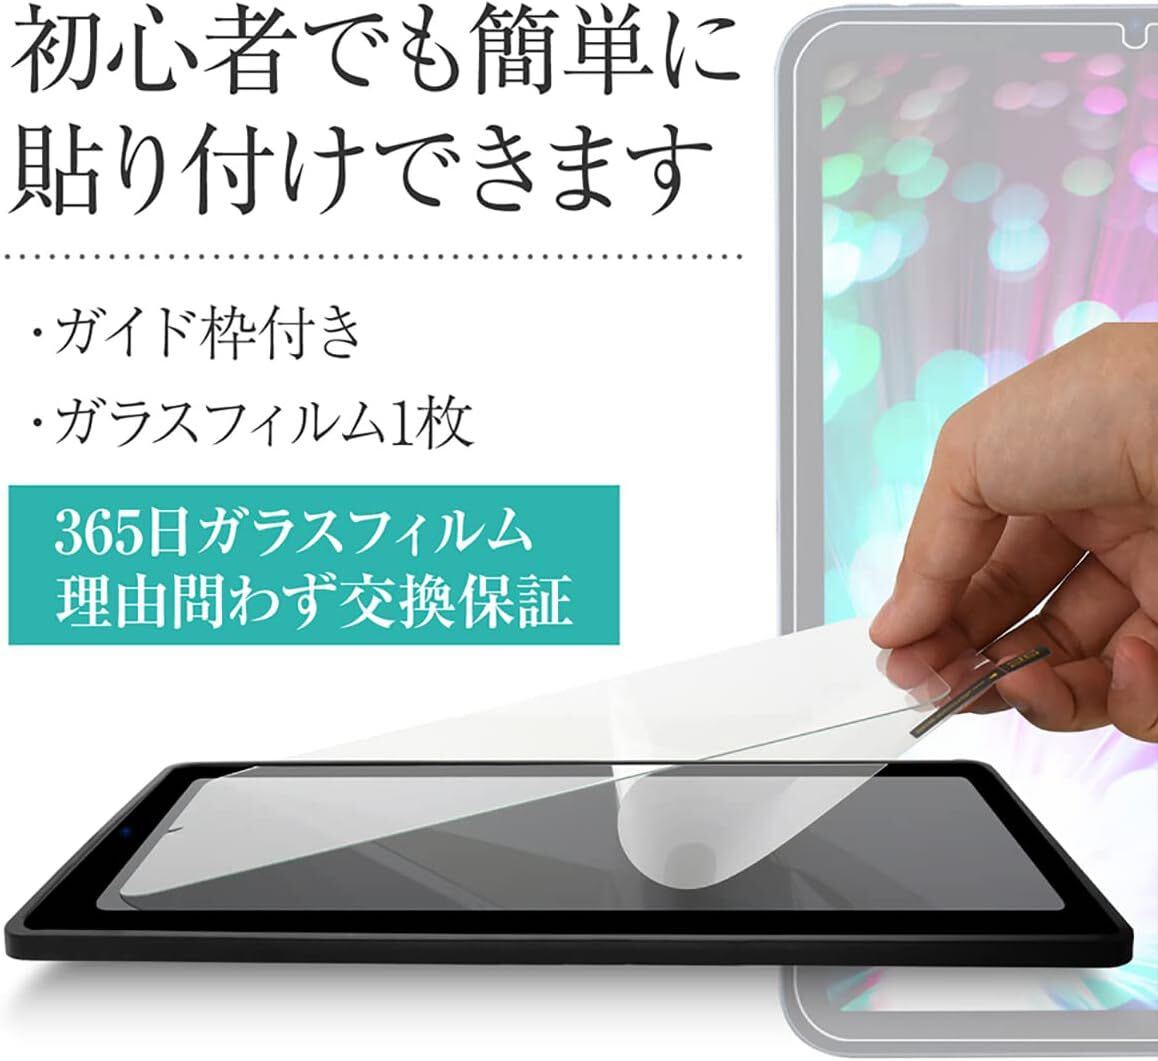 6704 ー大特価ーNewlish 日本企画 iPad (第9/8/7世代) 10.2ガラスフィルム 10.2インチ 日本製旭硝子採用 簡単 ペンシル対応 高透過率 薄型_画像5